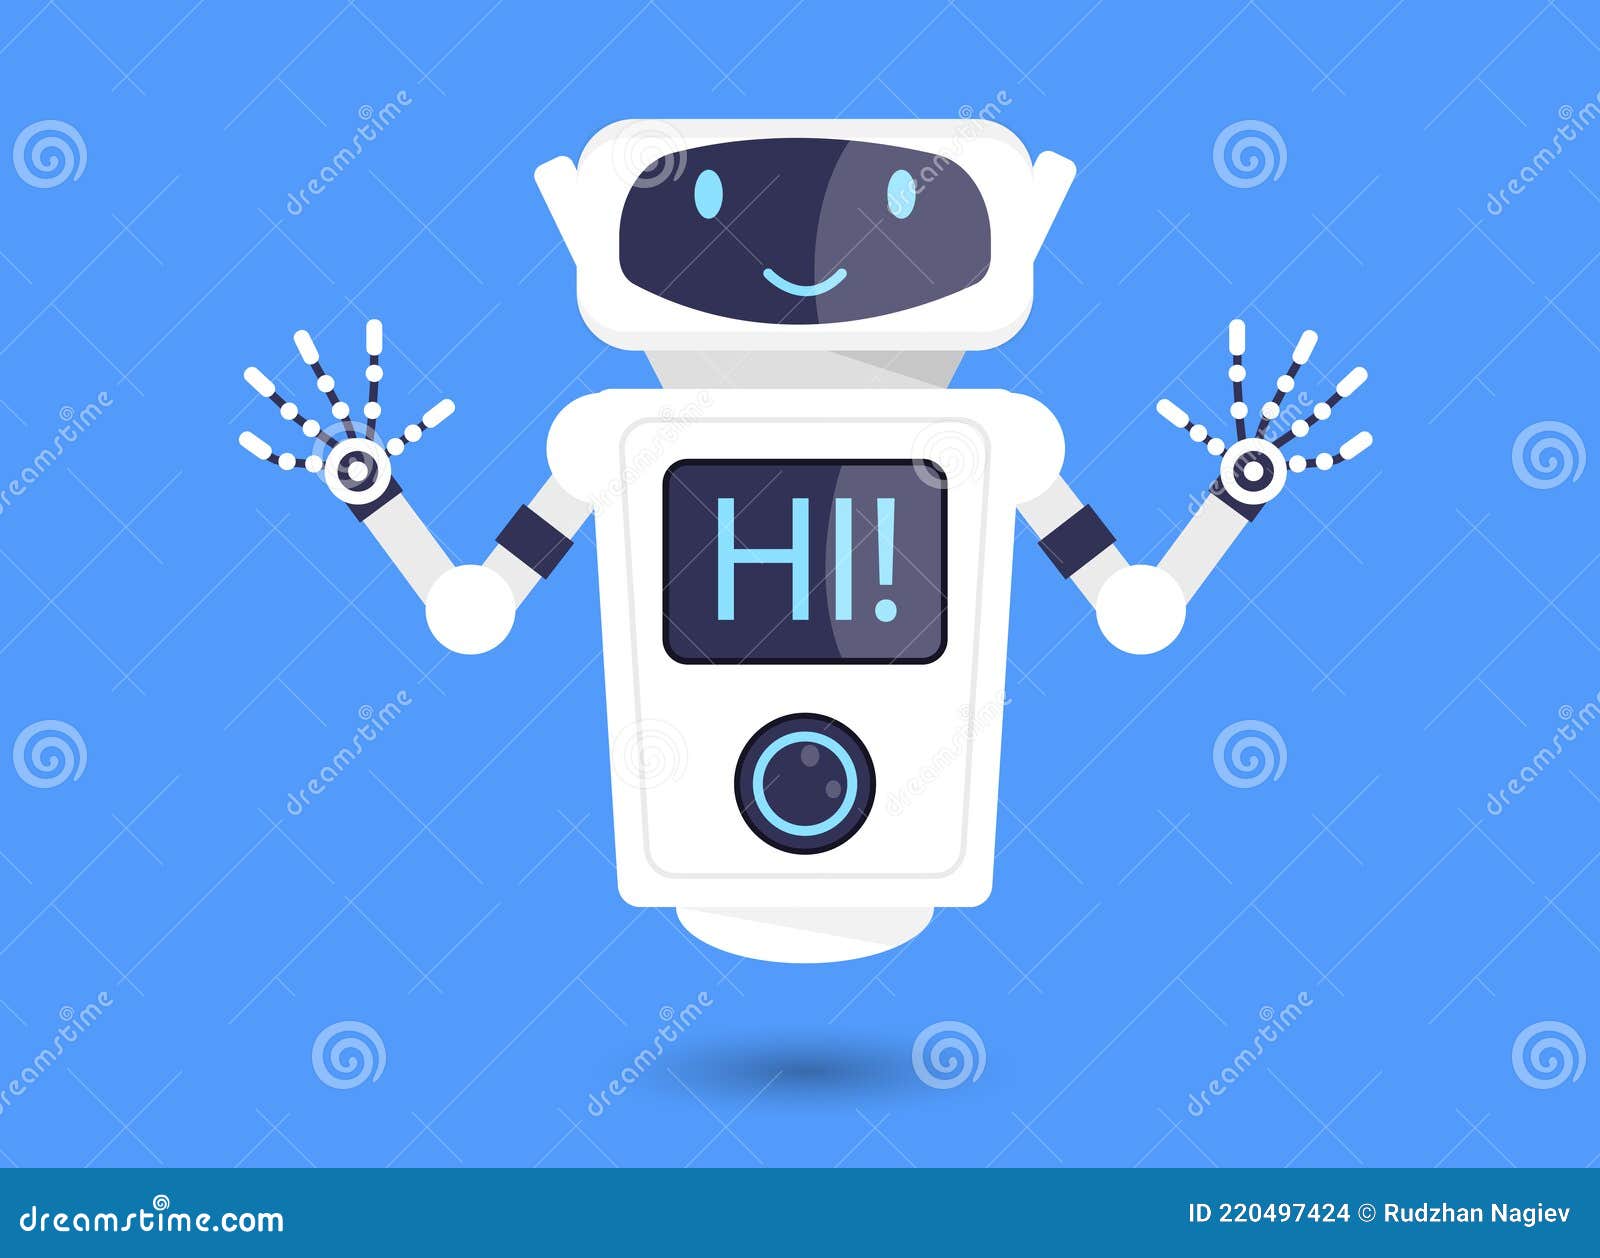 Được minh họa bởi hình ảnh vector, con robot trong bức tranh này nhìn rất đáng yêu và sẵn sàng để trở thành người bạn đồng hành của bạn. Bạn sẽ có một cái nhìn tuyệt vời về sức mạnh và khả năng của nó. Điều này sẽ khiến bạn muốn xem nó một cách kỹ lưỡng hơn.